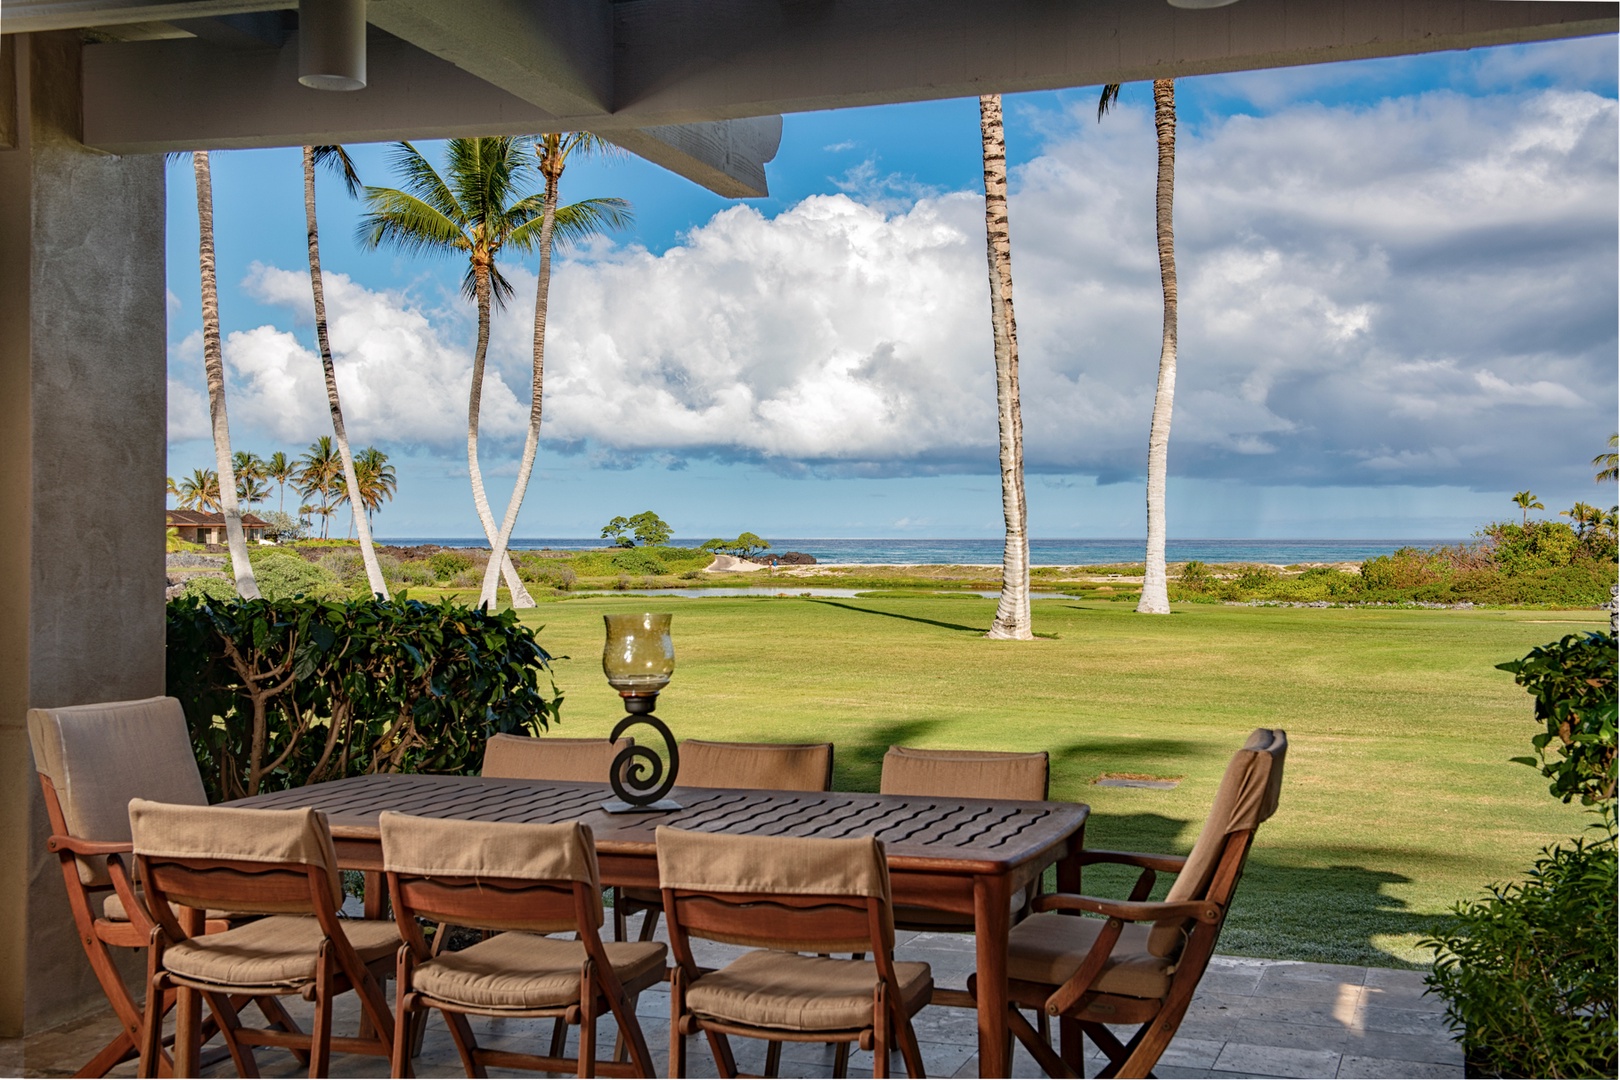 Kailua Kona Vacation Rentals, 3BD Golf Villa (3101) at Four Seasons Resort at Hualalai - Alternate view of al fresco dining table.